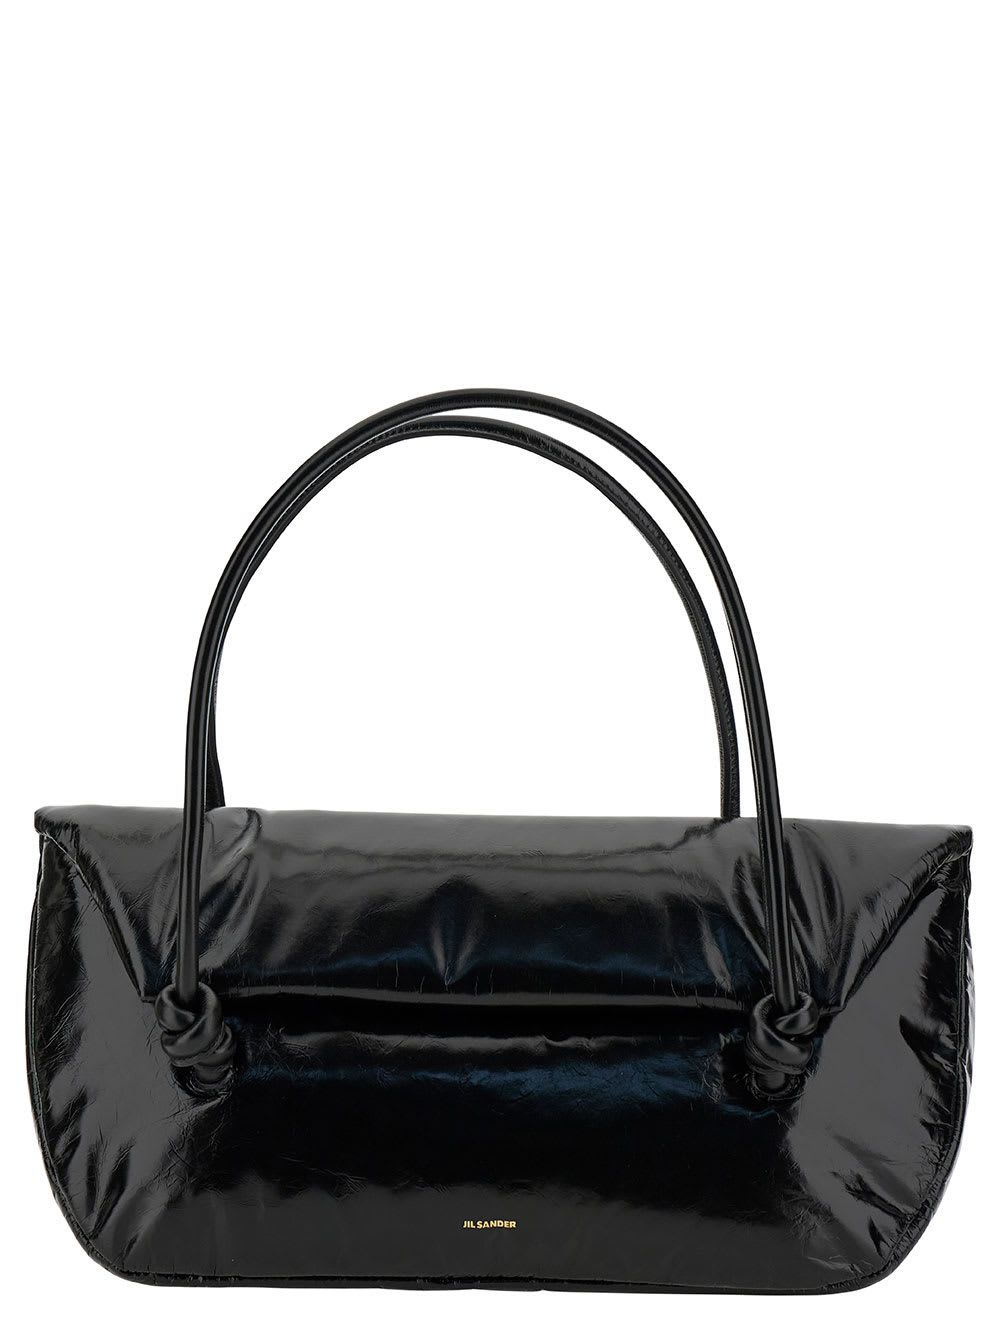 Jil Sander Knot Bag. In Black